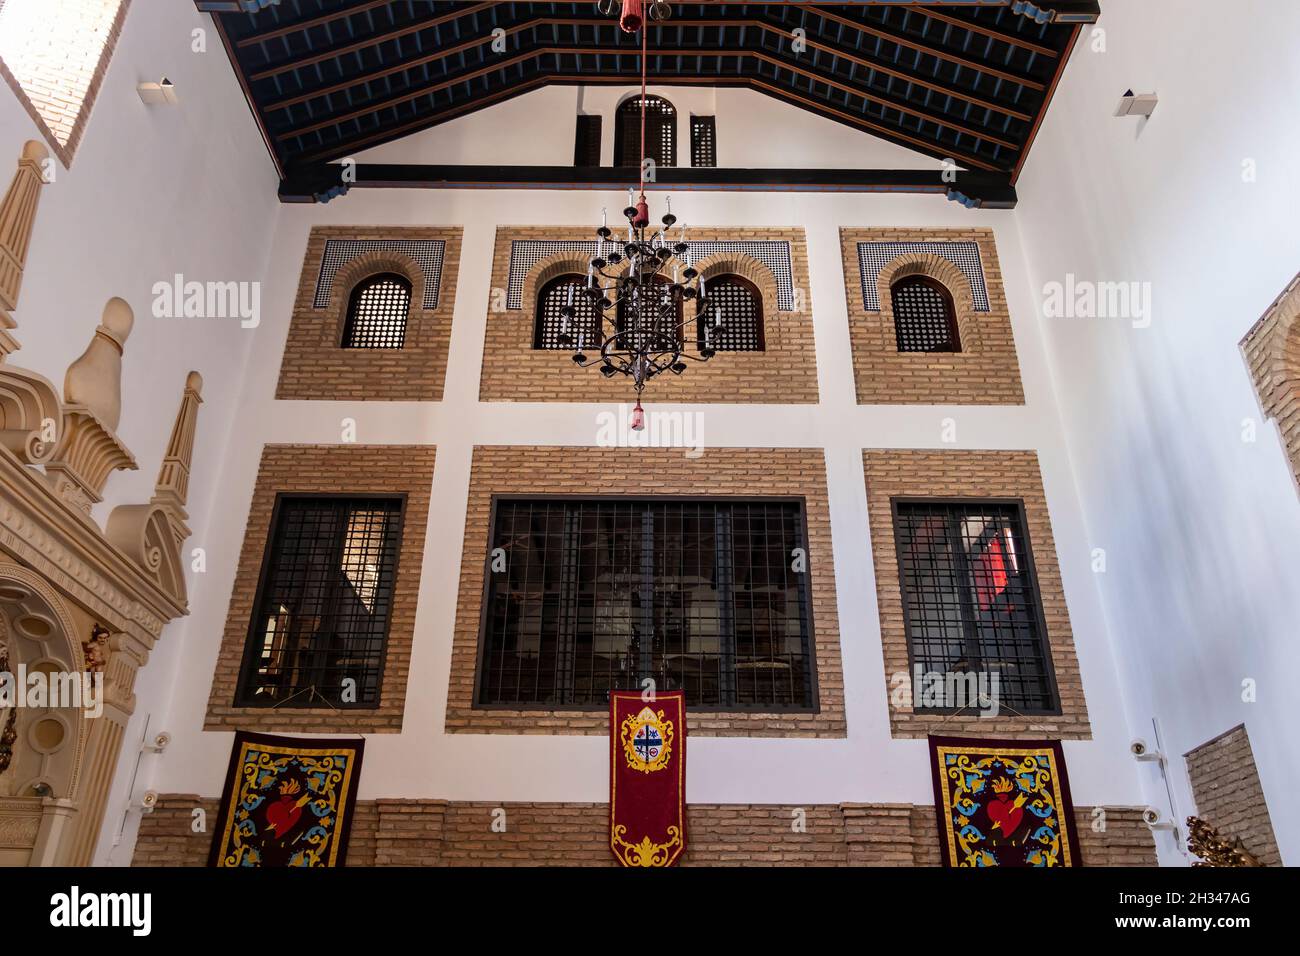 Huelva, Espagne - 24 octobre 2021: Lieu d'où les religieuses cloîtrées assistent à la Sainte Messe, Monastère de Santa María de Gracia Madres Agustinas.Le champ Conv Banque D'Images